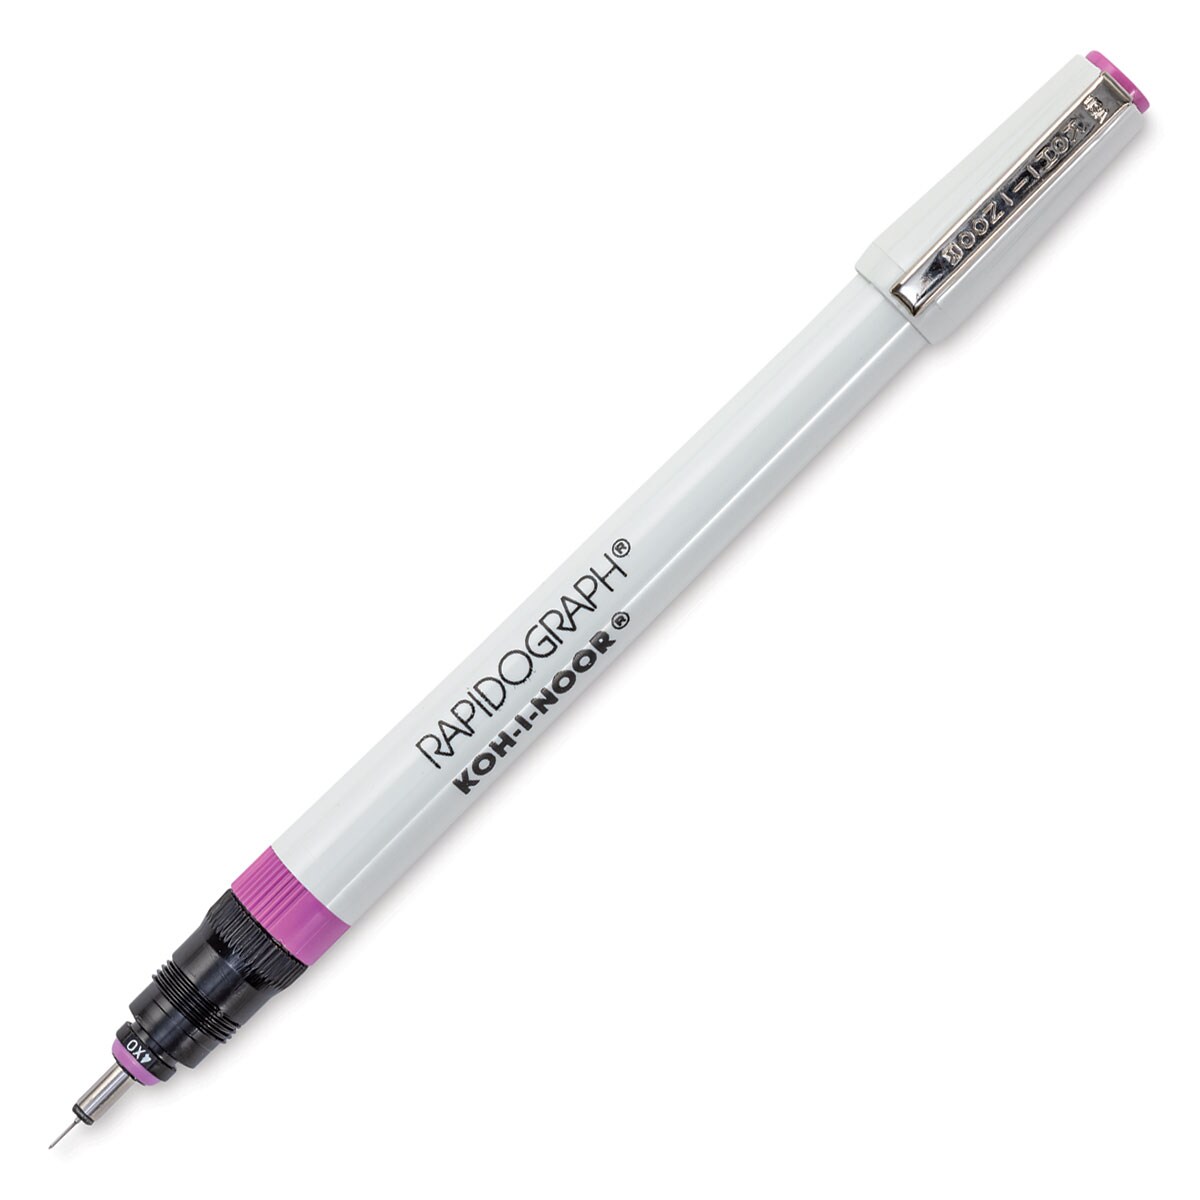 Koh-I-Noor Rapidograph Pen - 4x0, 0.18 mm Tip